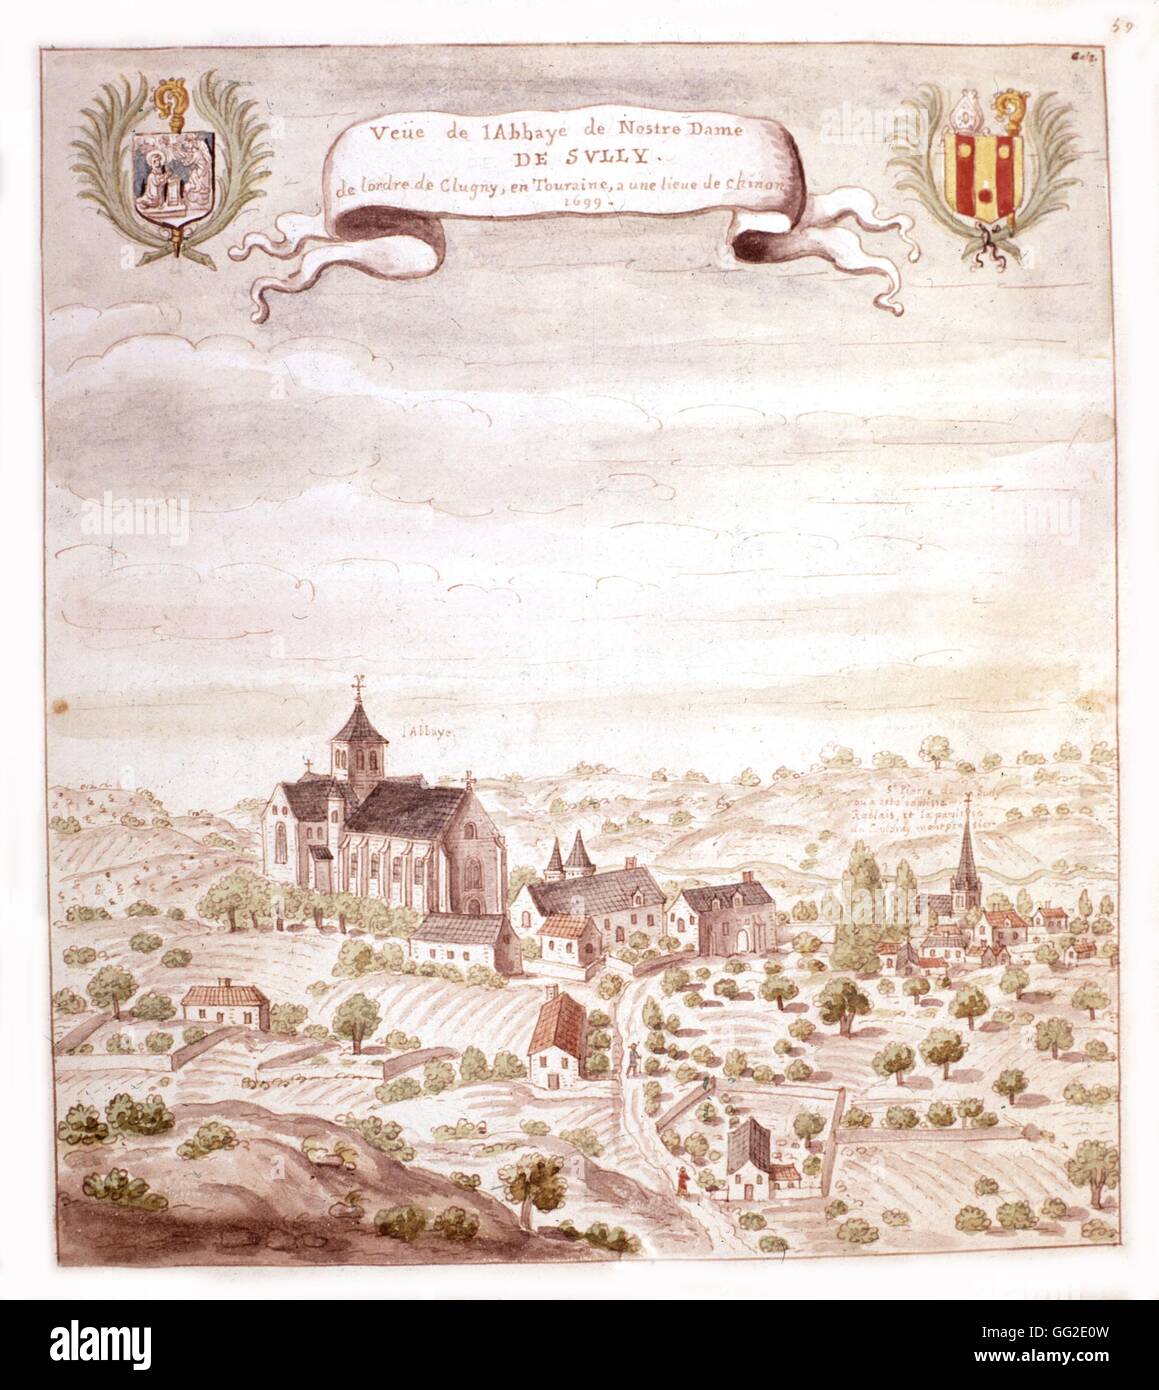 Anonyme, vue sur l'abbaye de Sully, et l'église où a été baptisé Rabelais 16ème siècle France Banque D'Images